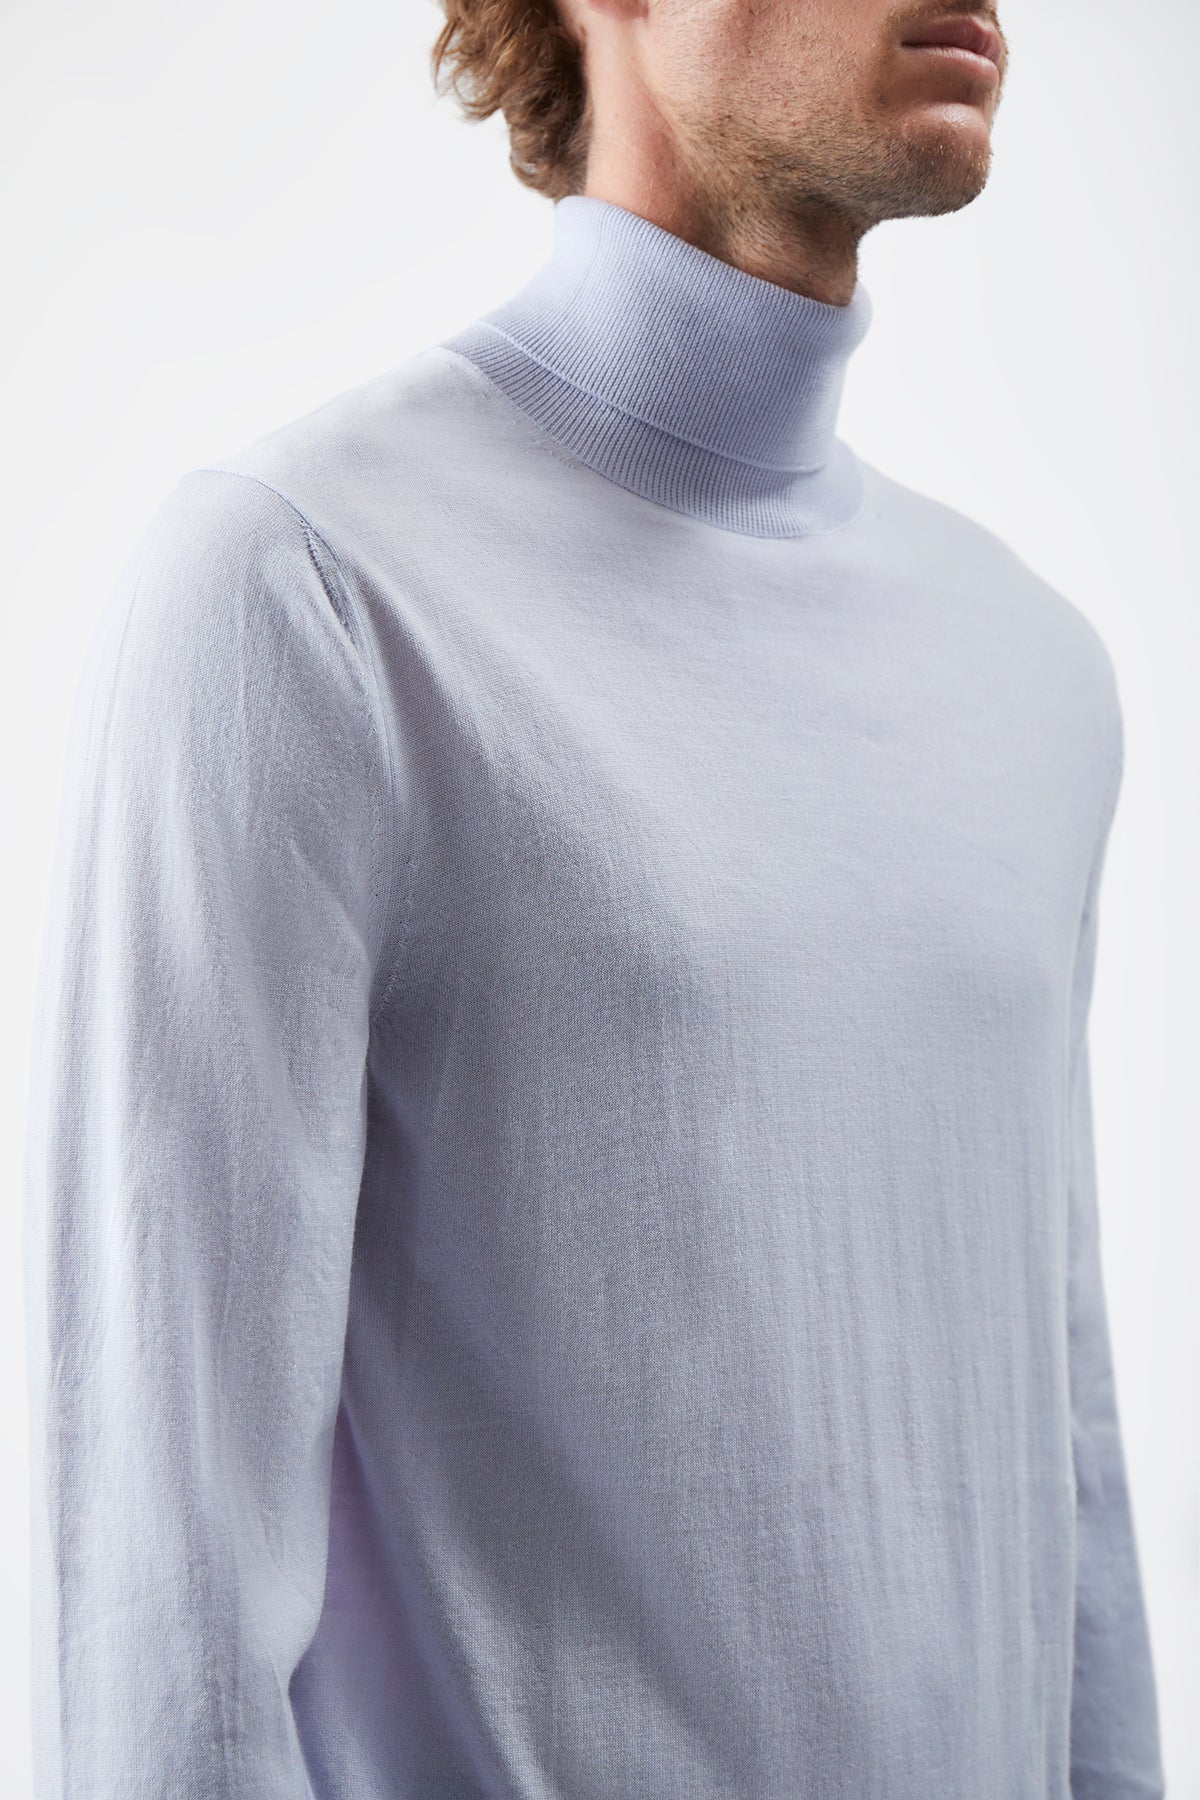 Jermaine Knit Turtleneck in Halogen Blue Merino Wool